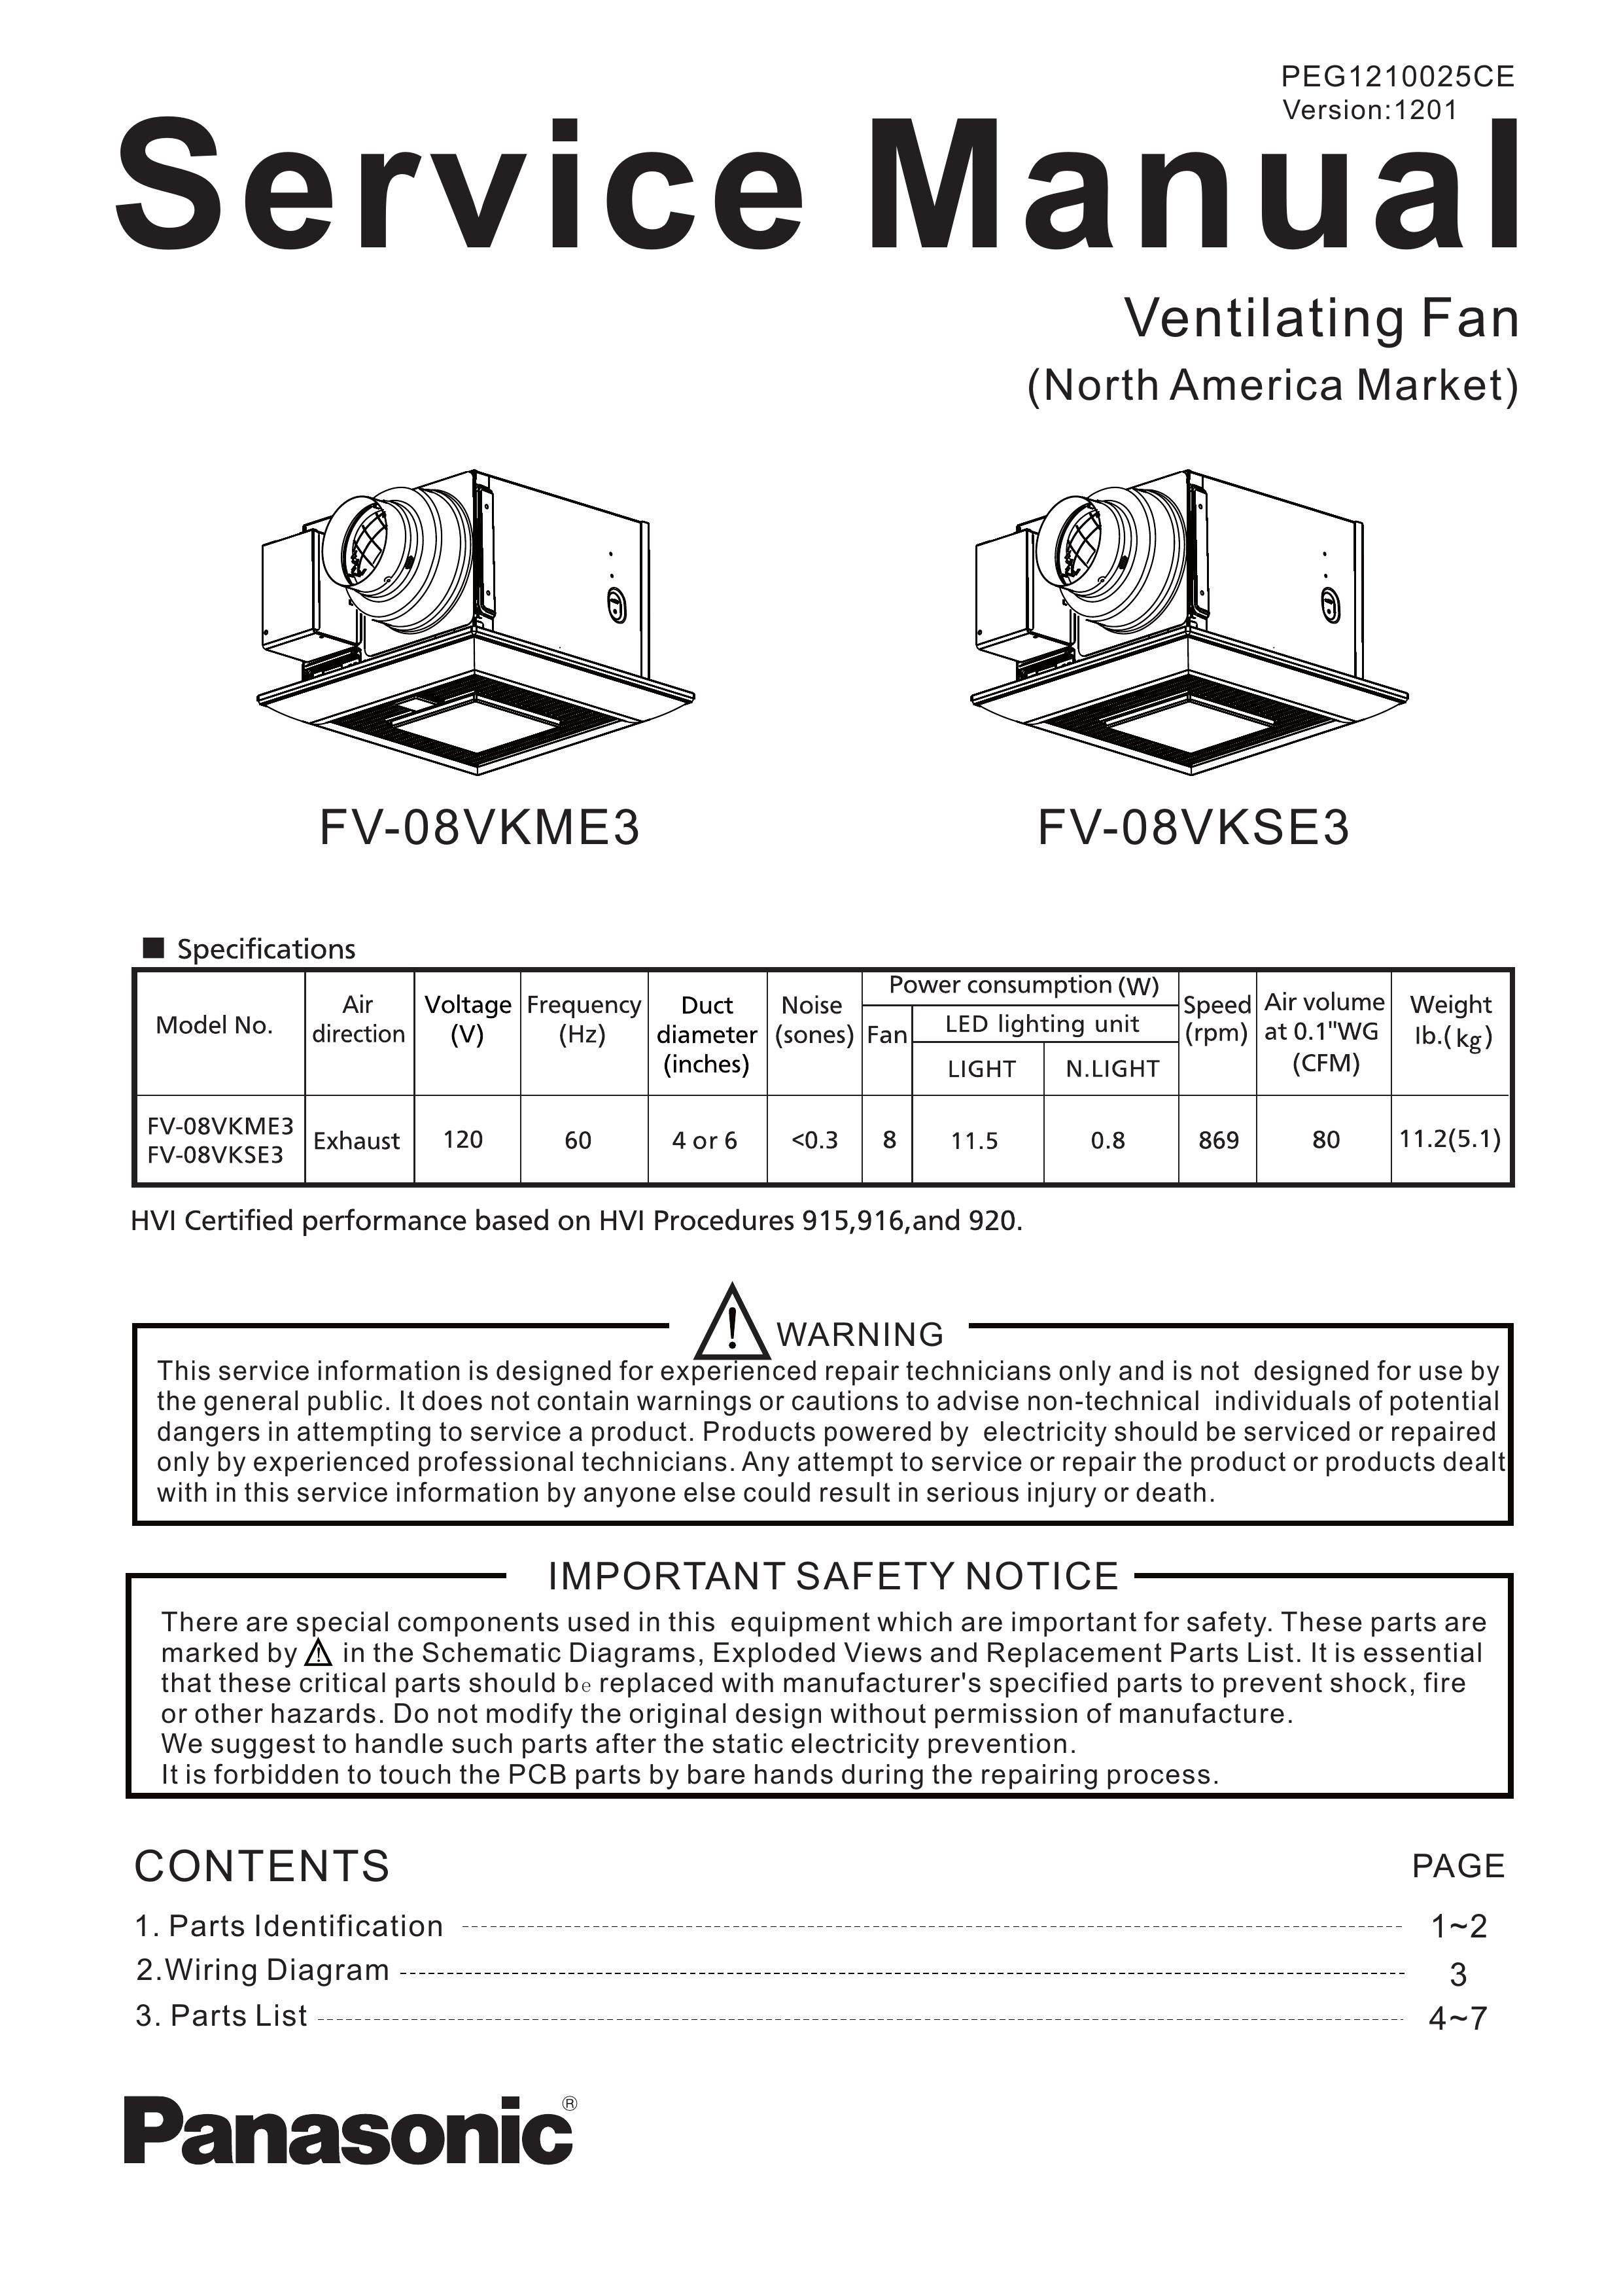 Panasonic FV-08VKSE3 Ventilation Hood User Manual